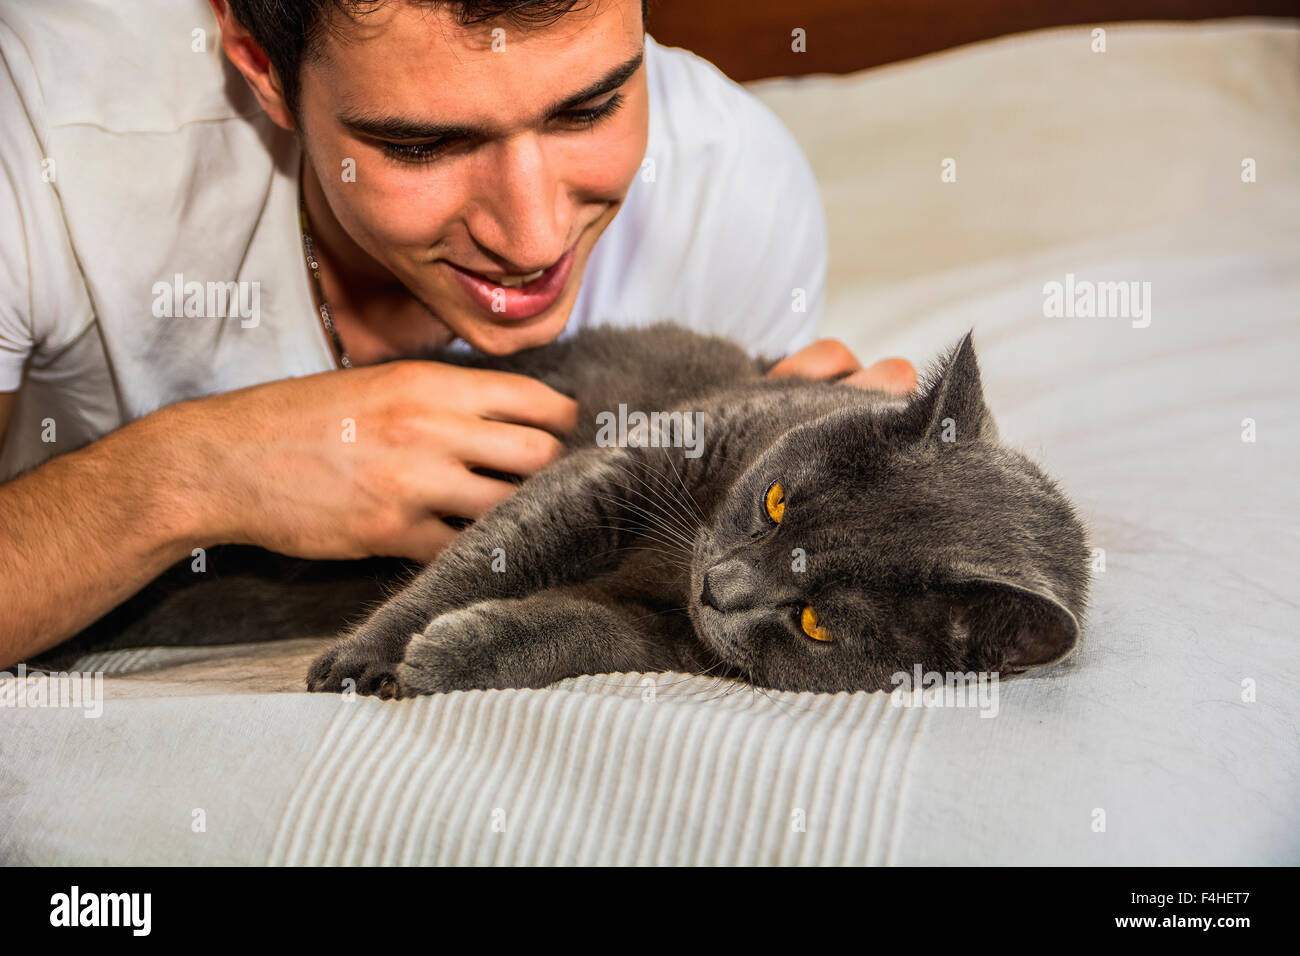 Hübscher Jüngling Tierliebhaber auf einem Bett, umarmen und kuscheln seine graue Katze-Haustier. Stockfoto